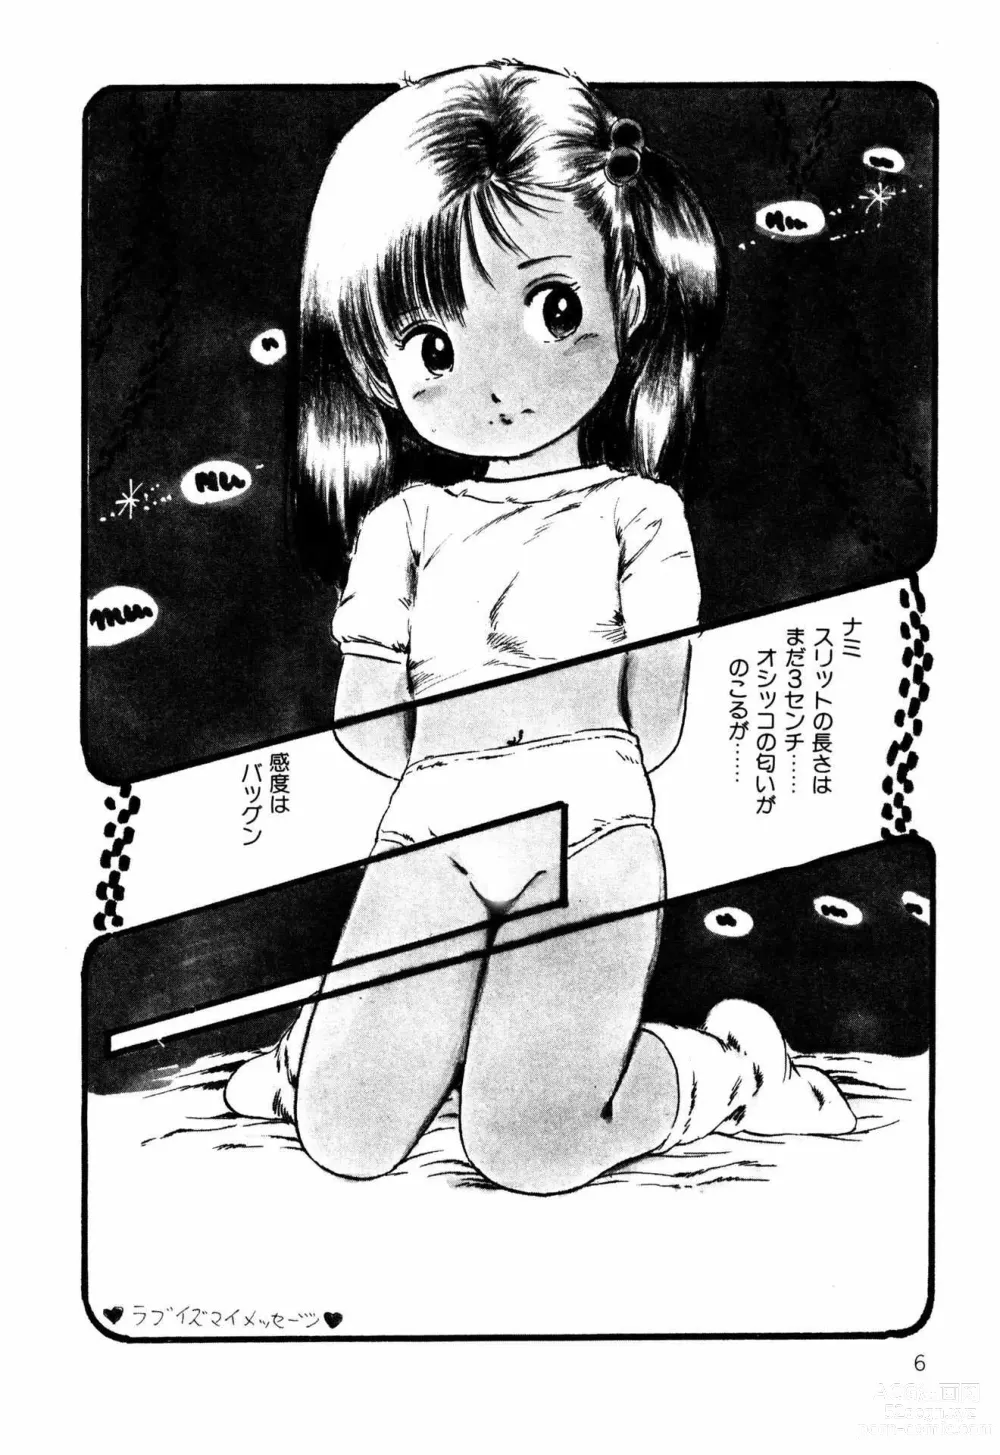 Page 6 of manga Koisuru Yousei